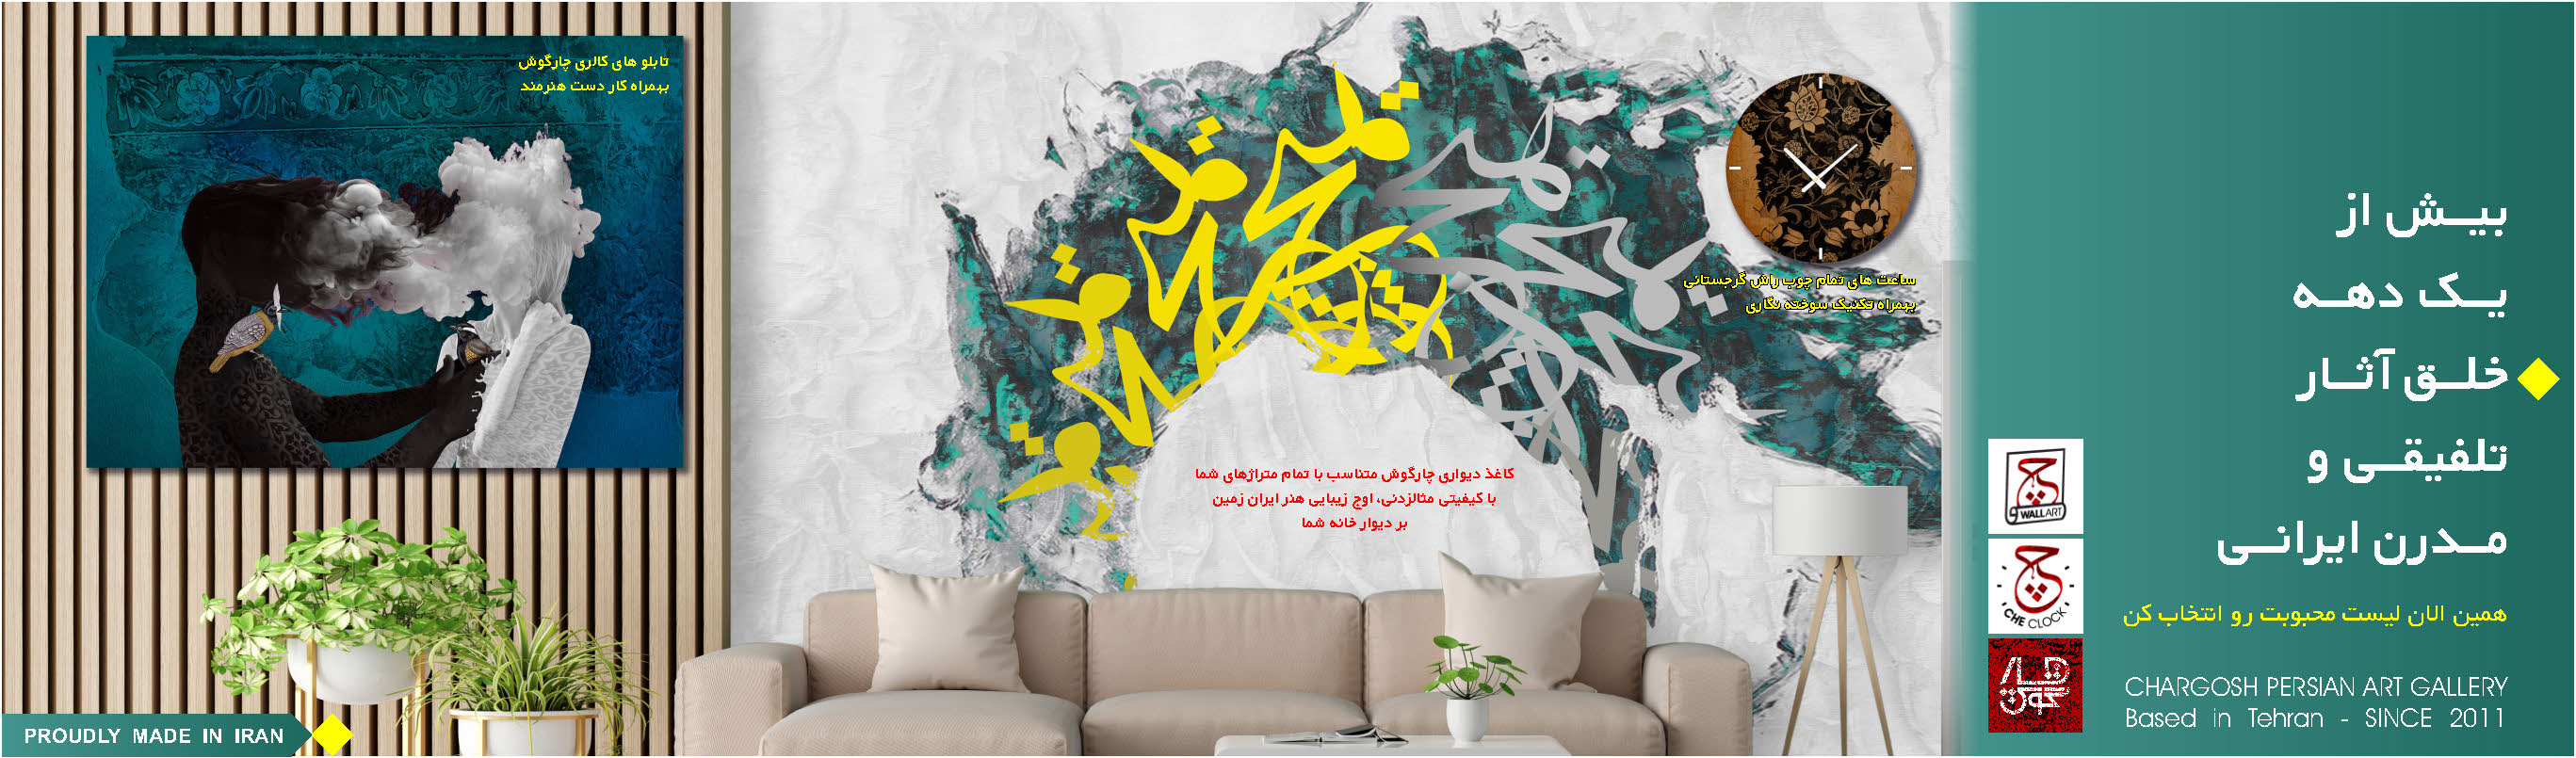 خرید تابلو های لوکس و مدرن ایرانی نقاشی و نقاشی خط مدرن گالری چارگوش